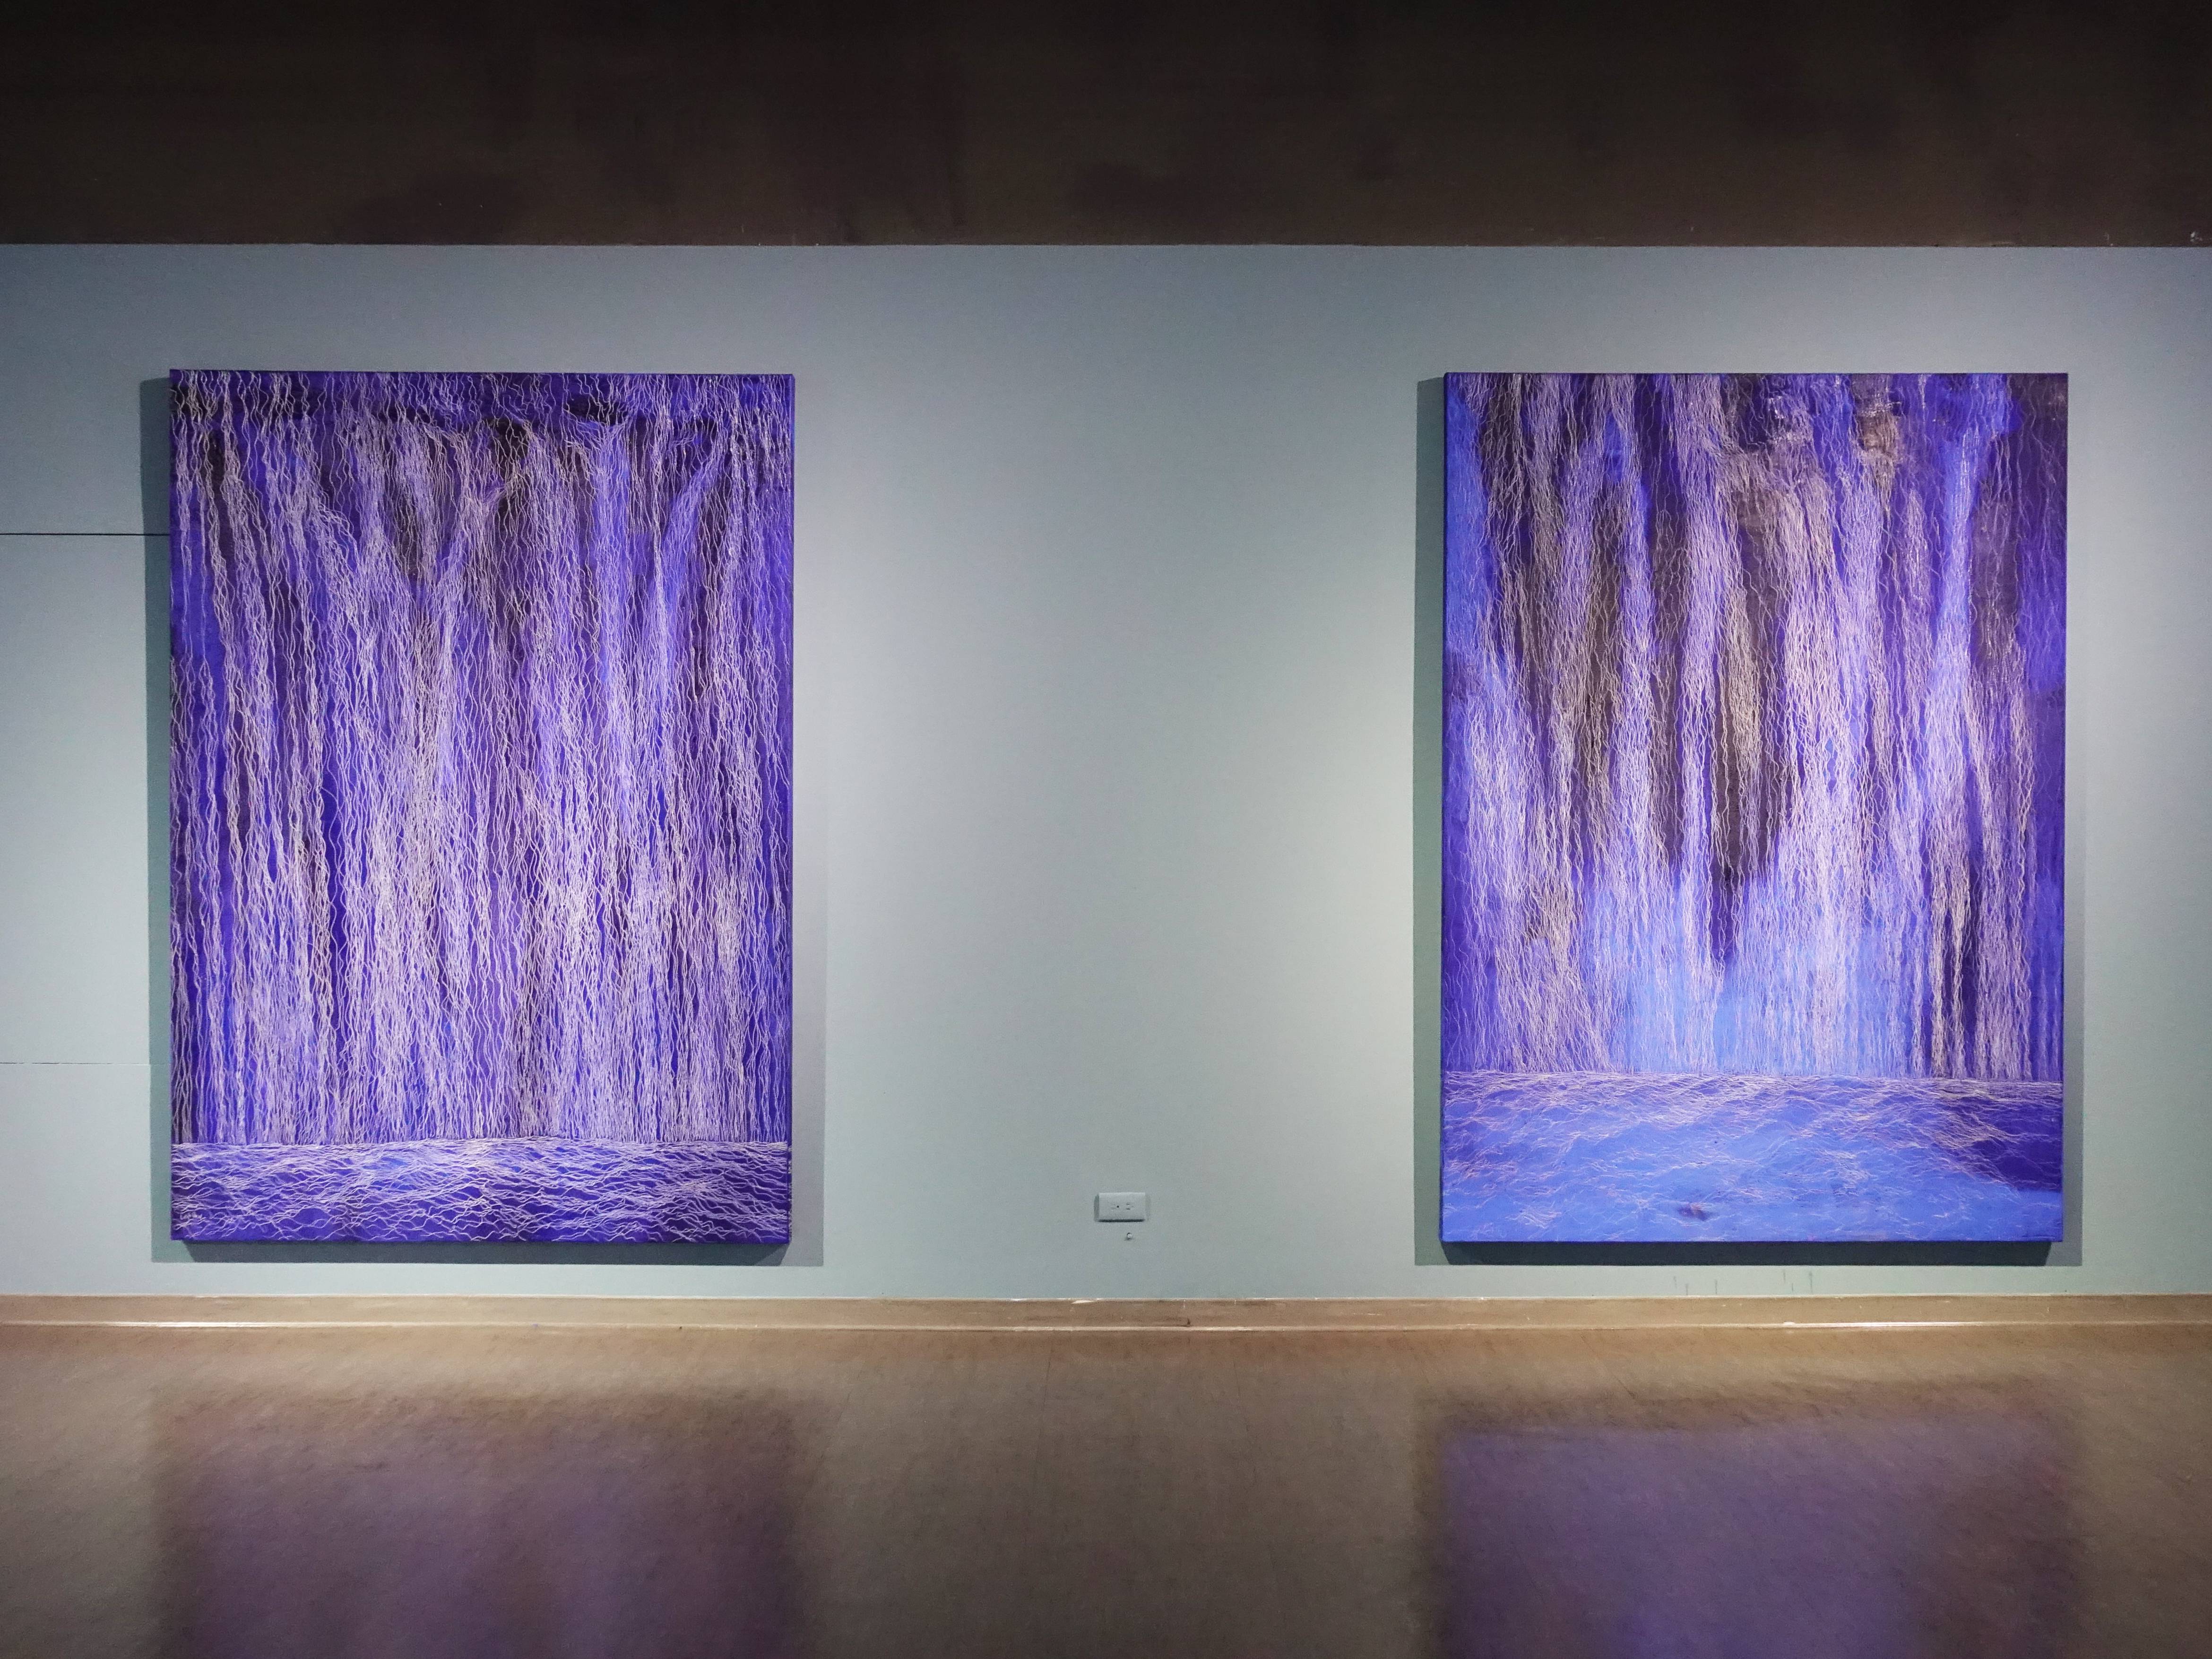 鄭麗雲，《瀑布II》，227 x 162 cm，油彩、蔴布，2017(右)。 鄭麗雲，《瀑布III》，227 x 162 cm，油彩、蔴布，2017(左)。